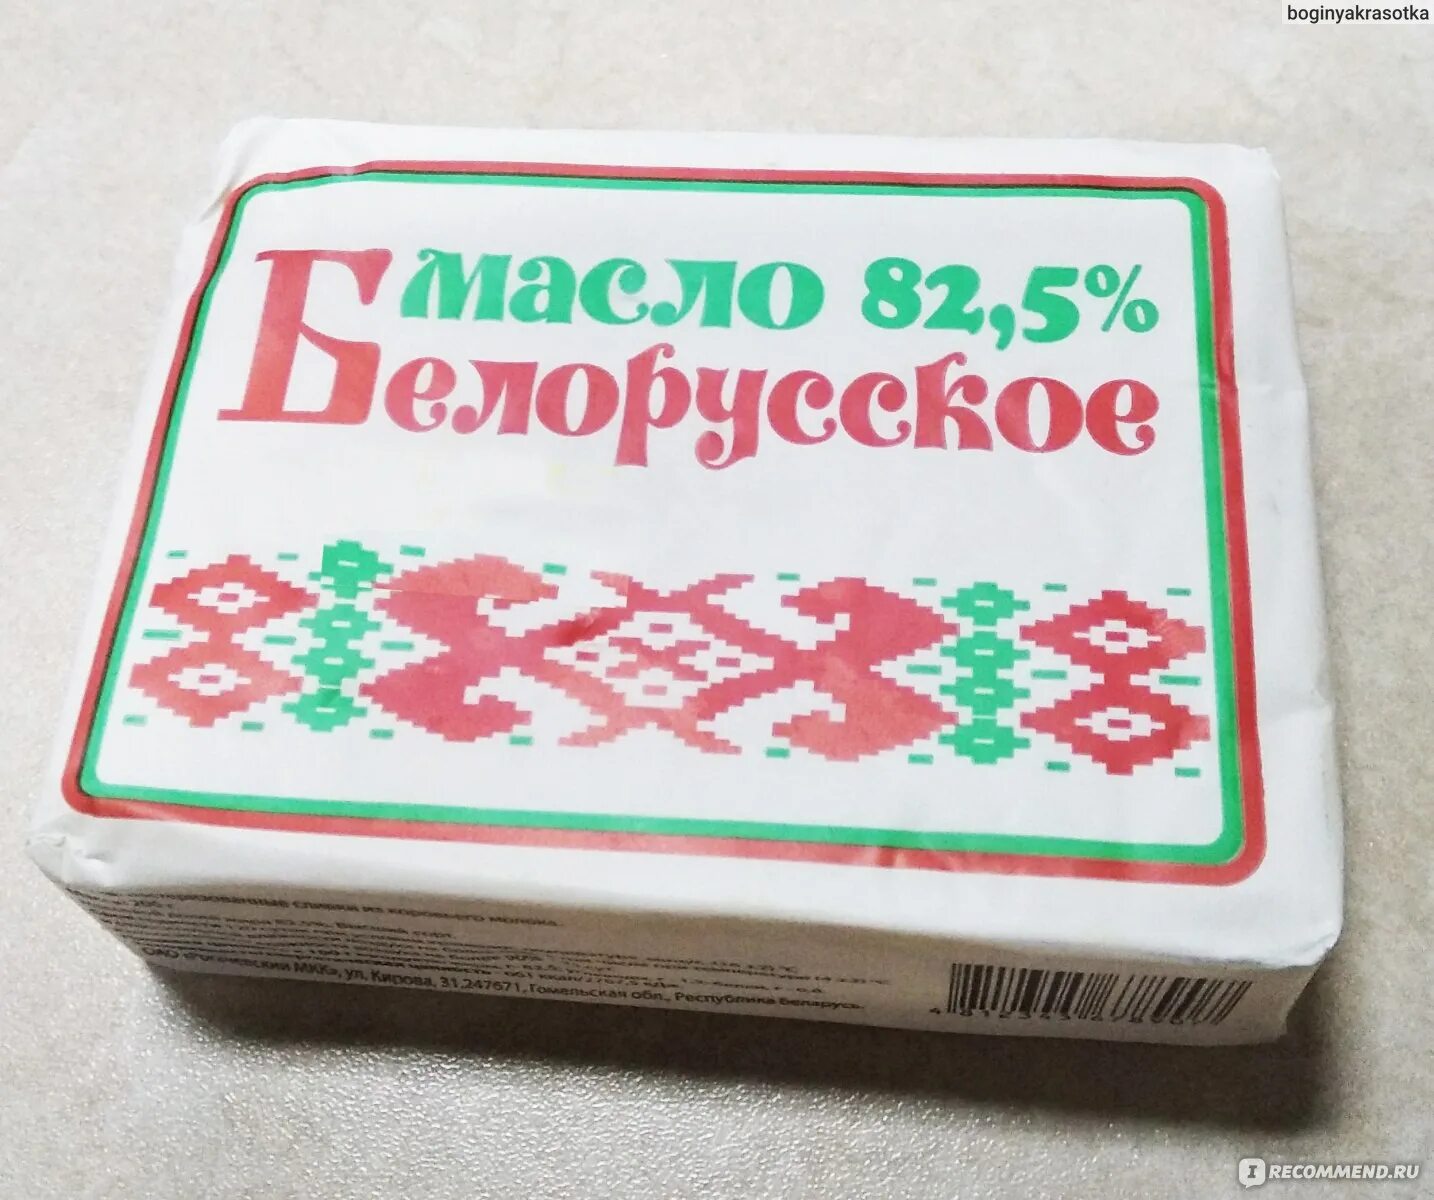 Купить белорусское сливочное